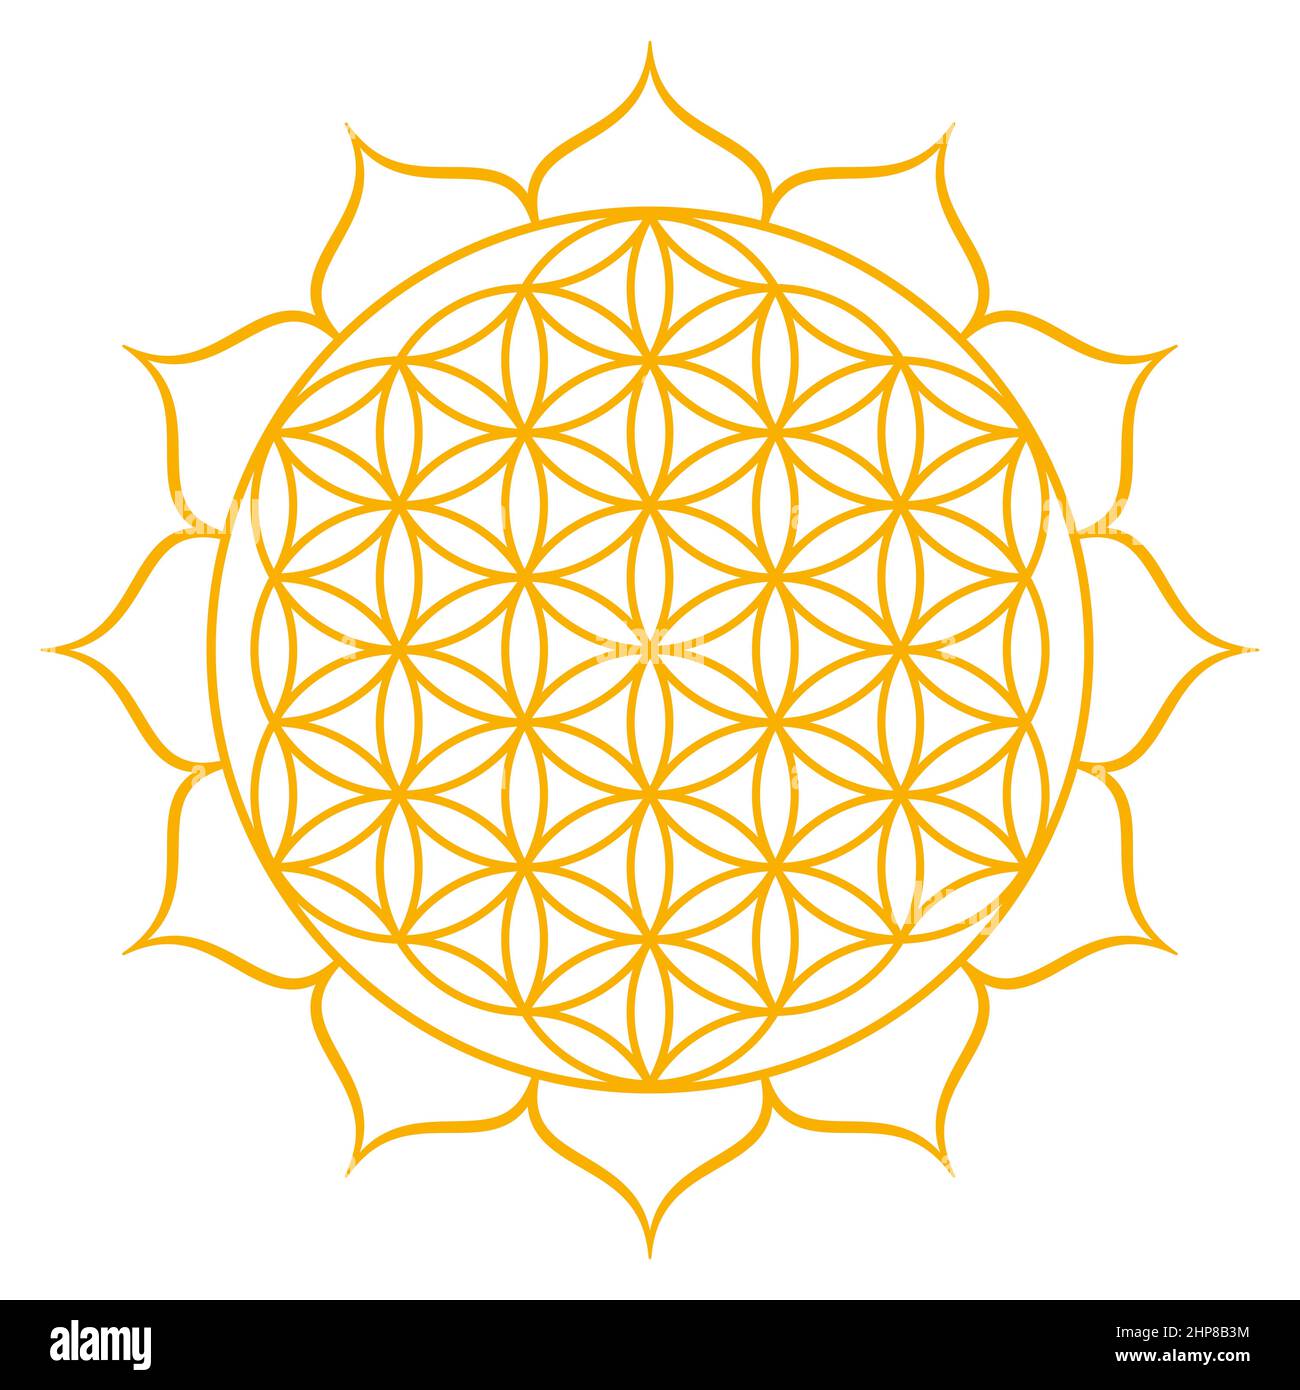 Fleur dorée de la vie avec douze pétales. Figure géométrique, symbole spirituel et géométrie sacrée. Chevauchement de cercles formant un mandala. Banque D'Images